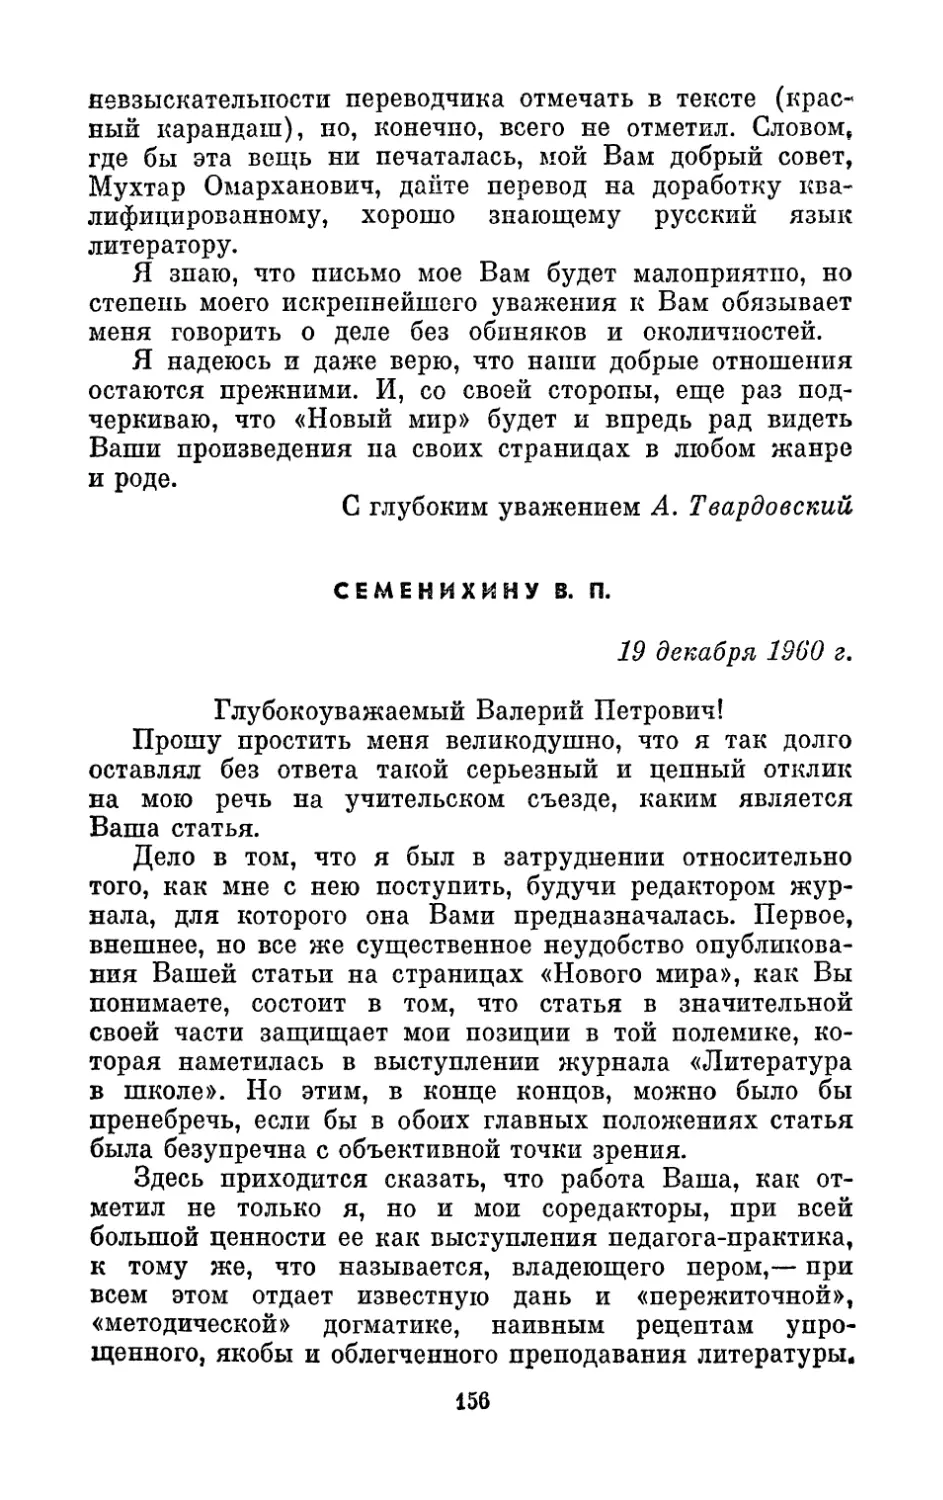 Семенихину В. П., 19 декабря 1960 г.